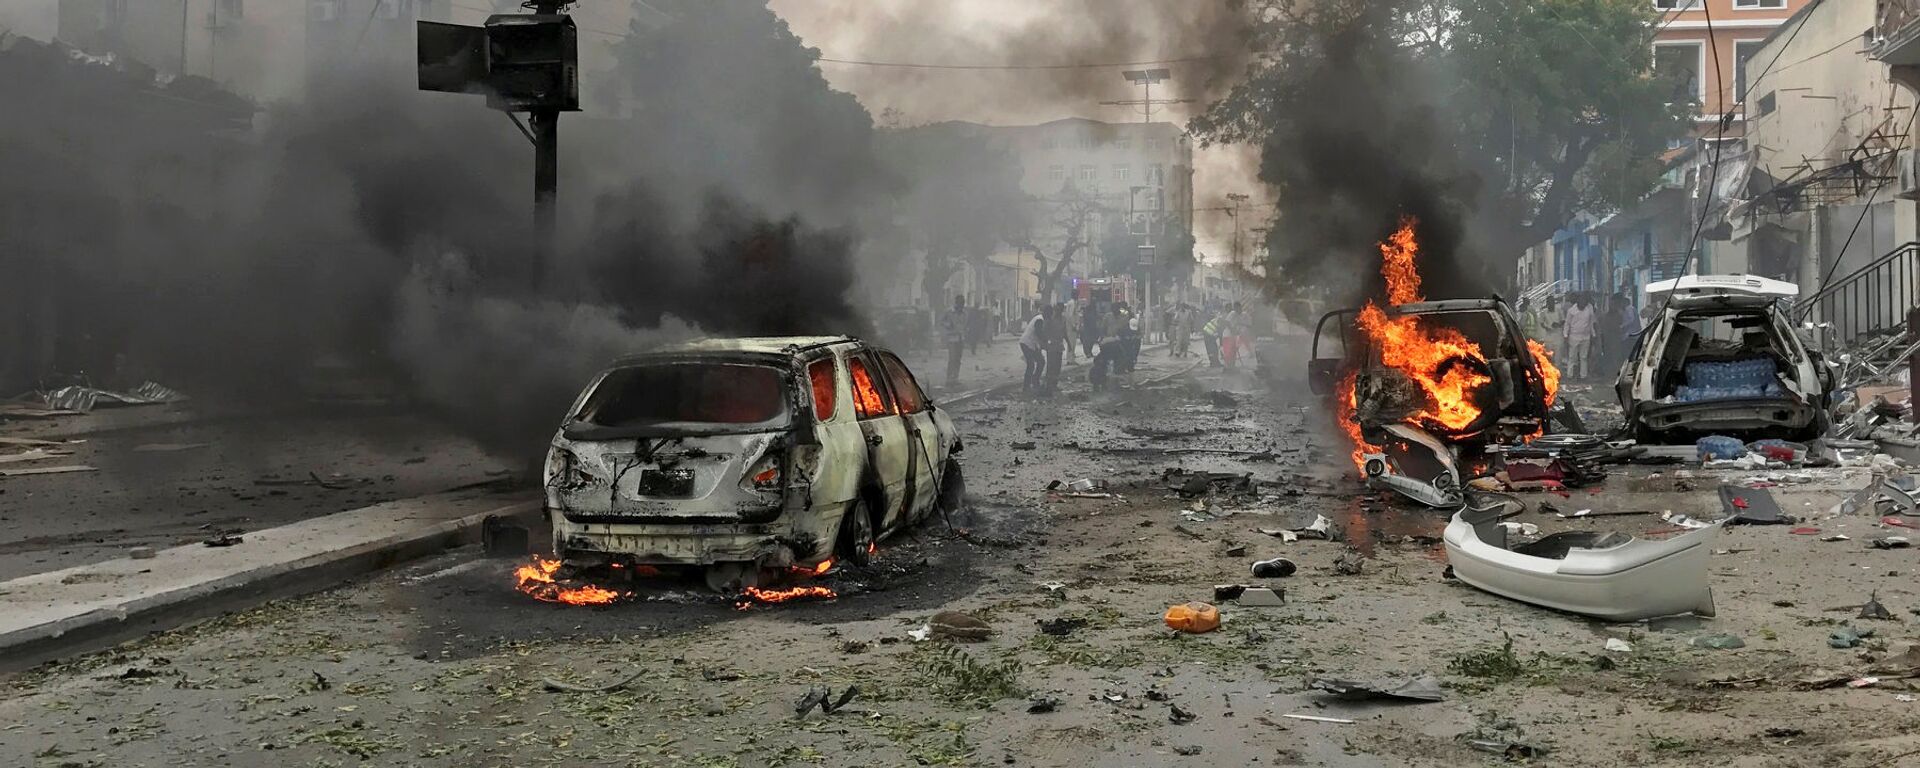 La explosión de un coche bomba en Mogadiscio (archivo) - Sputnik Mundo, 1920, 25.09.2021